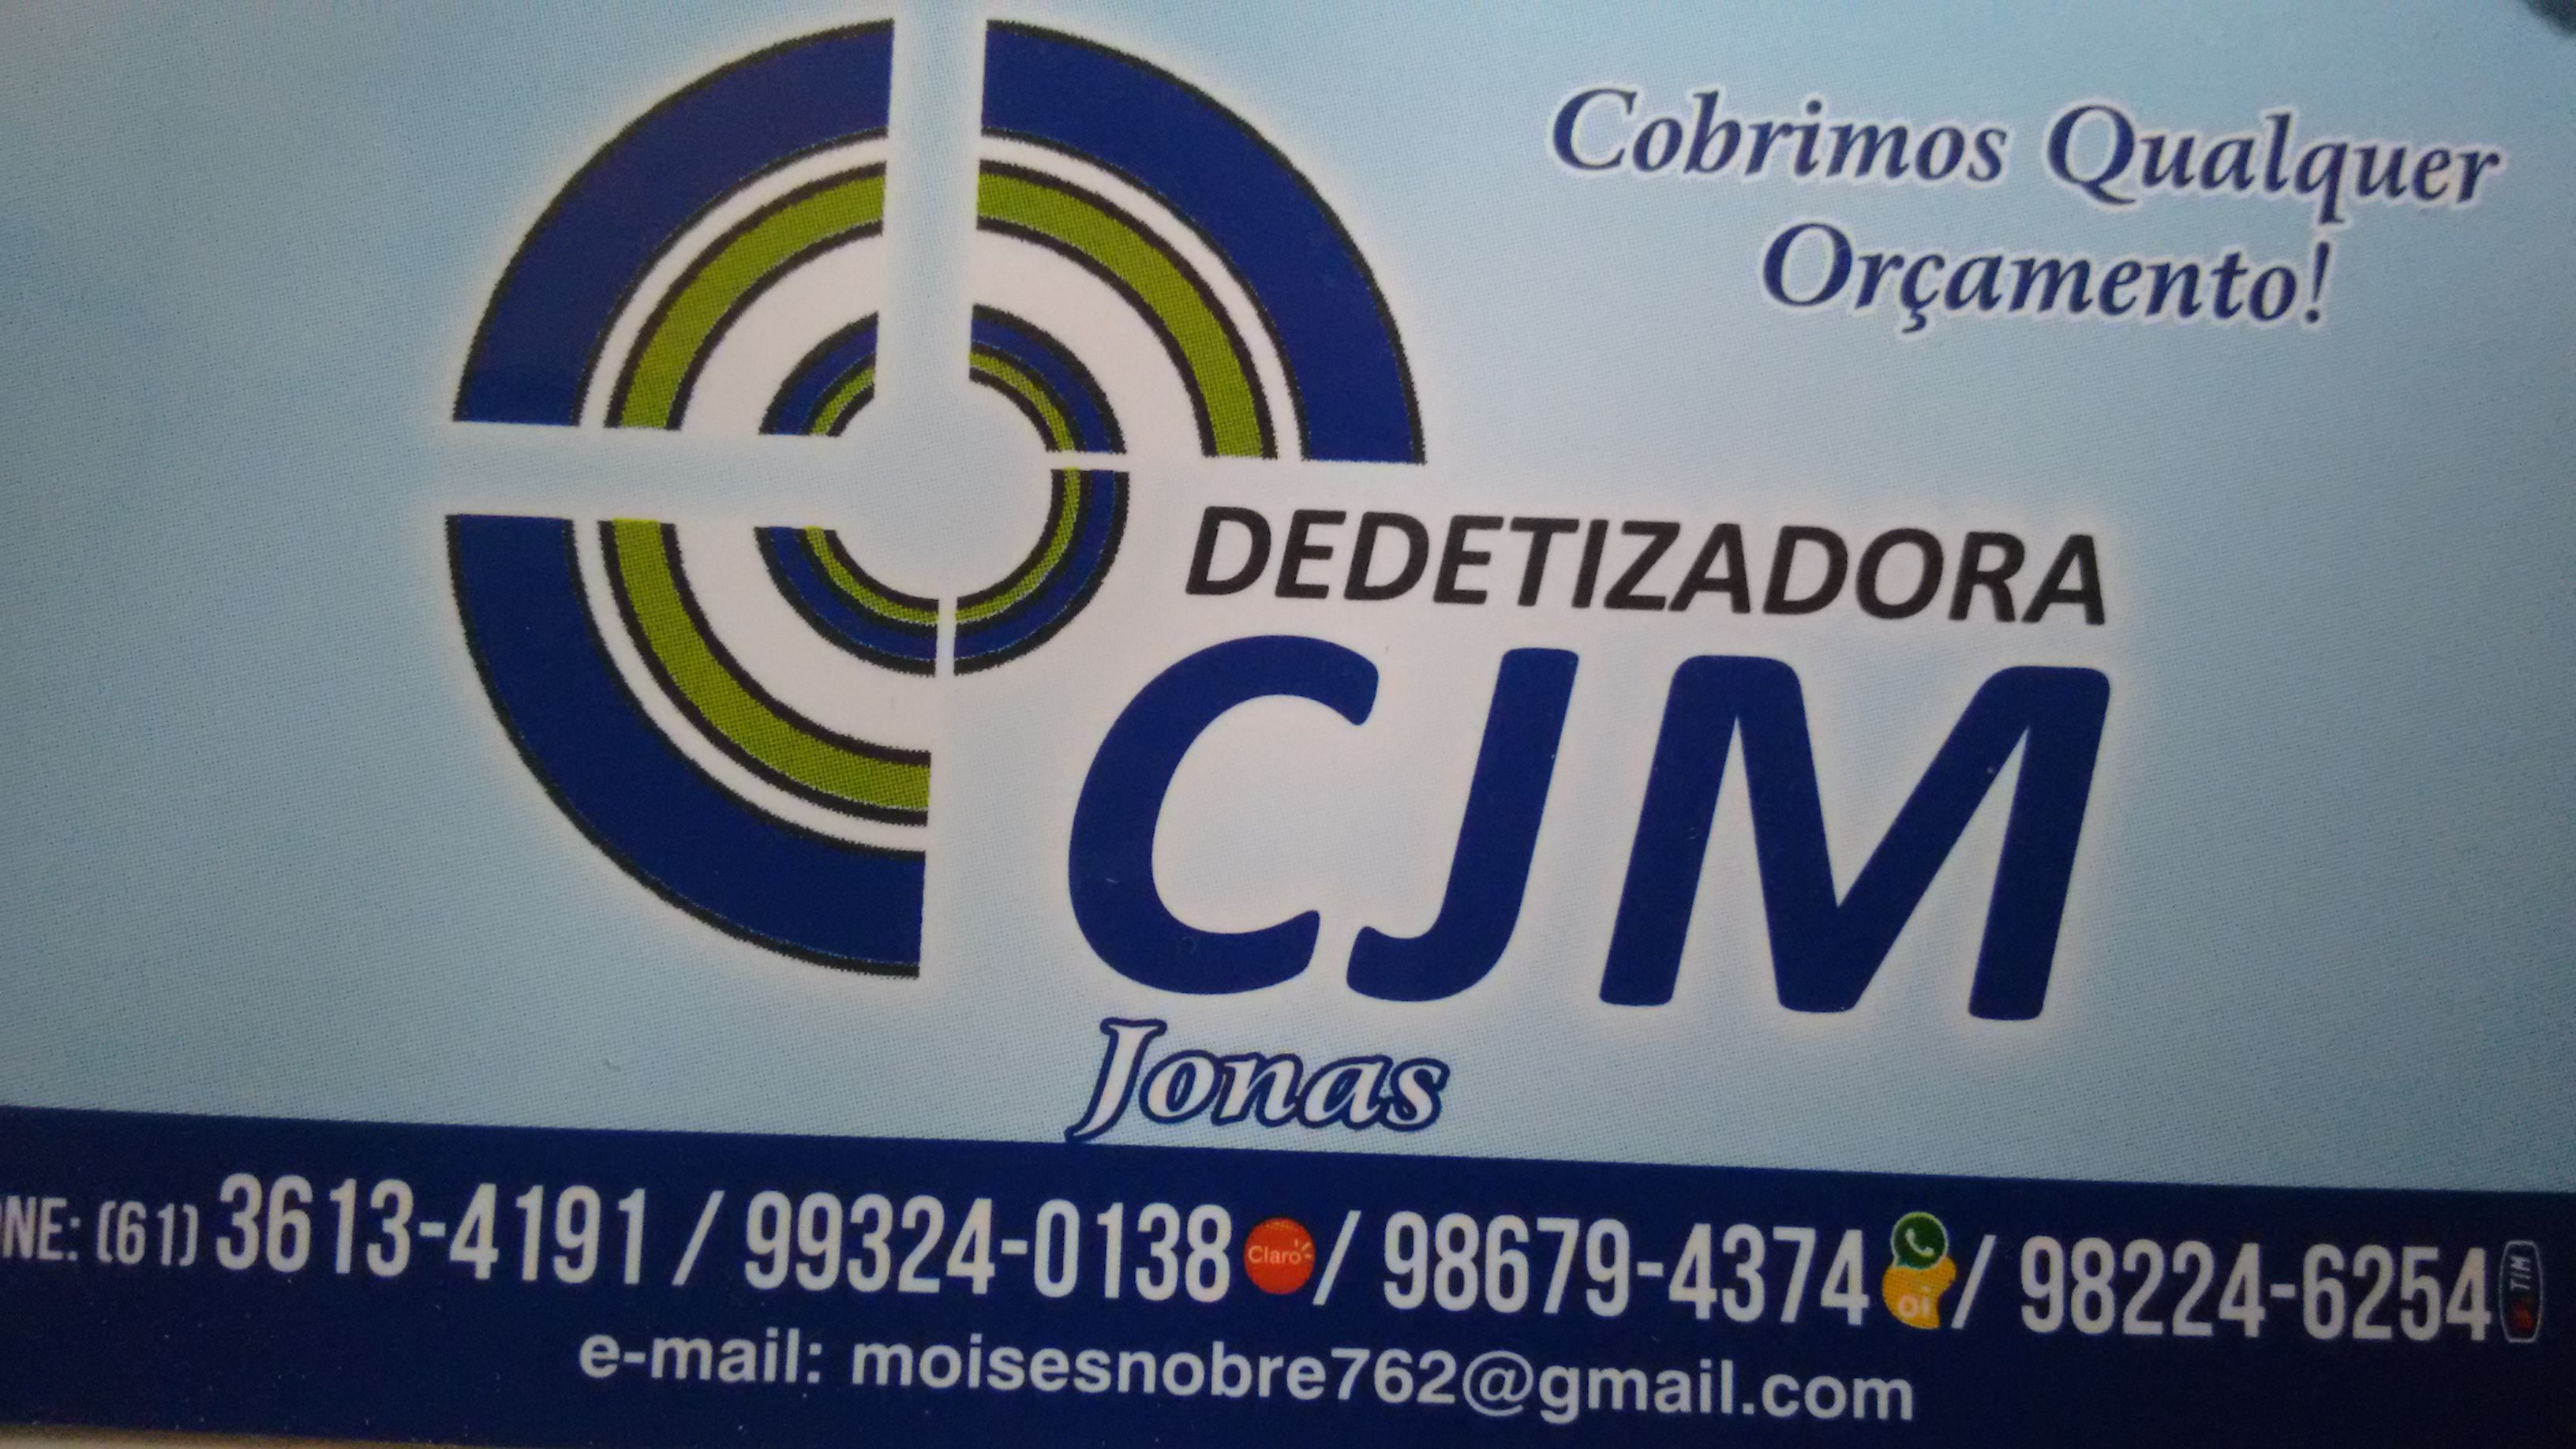 CJM DEDETIZADORA - Dedetização e Desratização - Águas Lindas de Goiás, GO